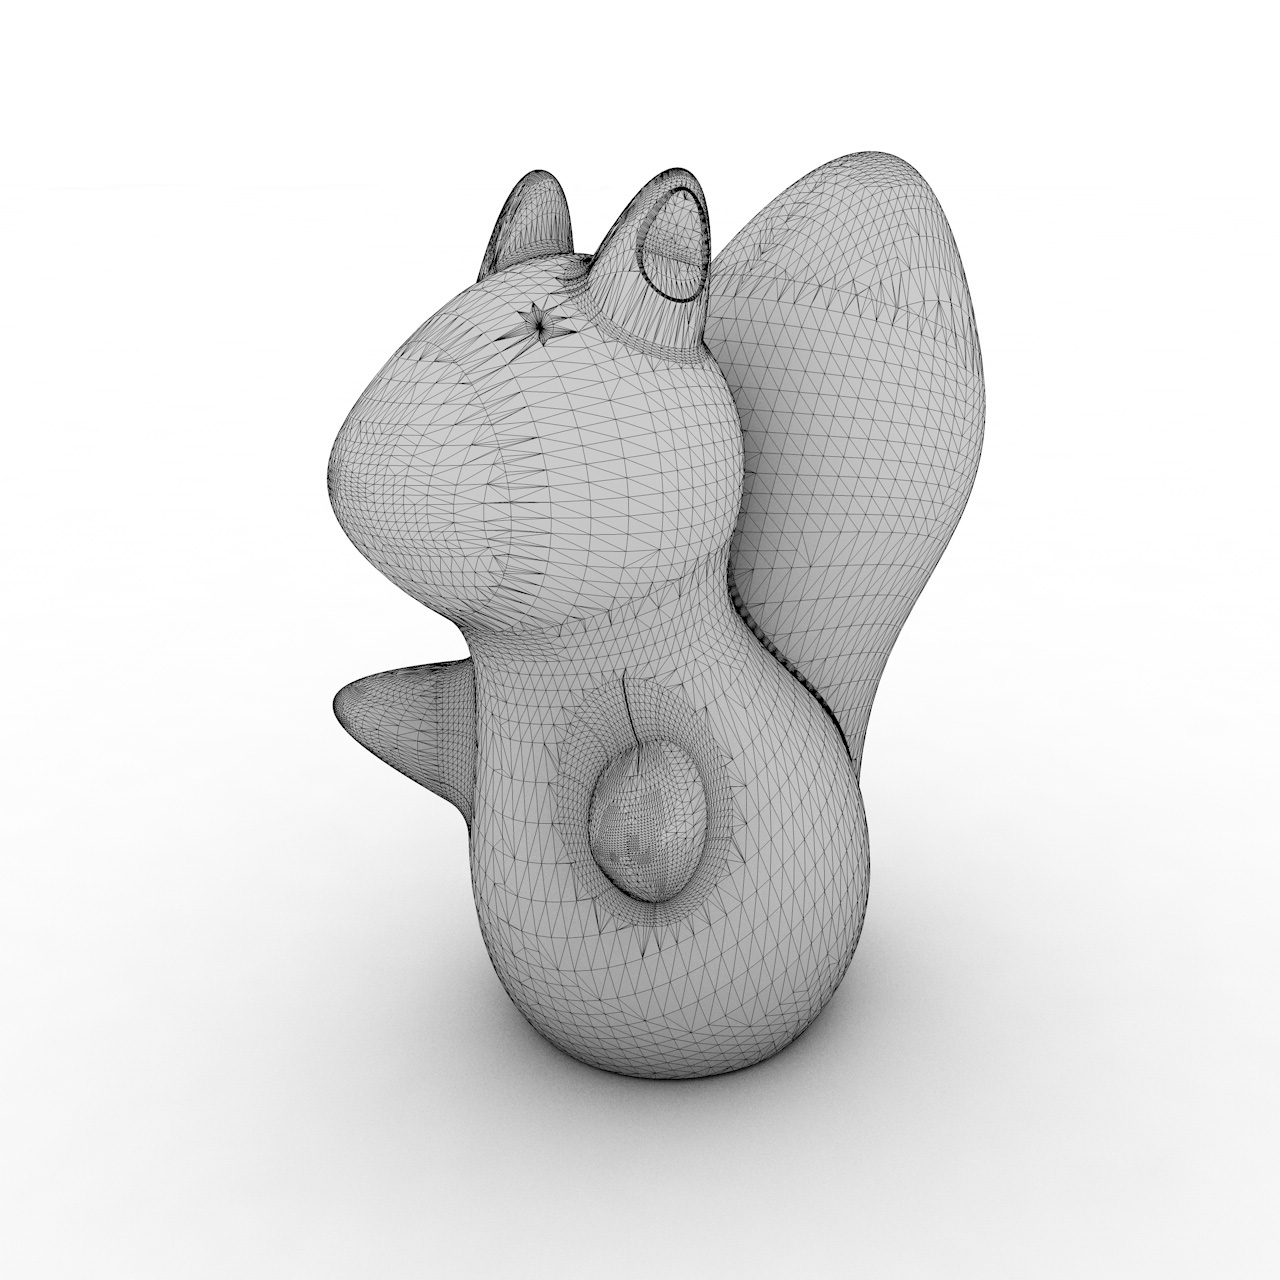 Modelo de impresión 3d de ardilla linda